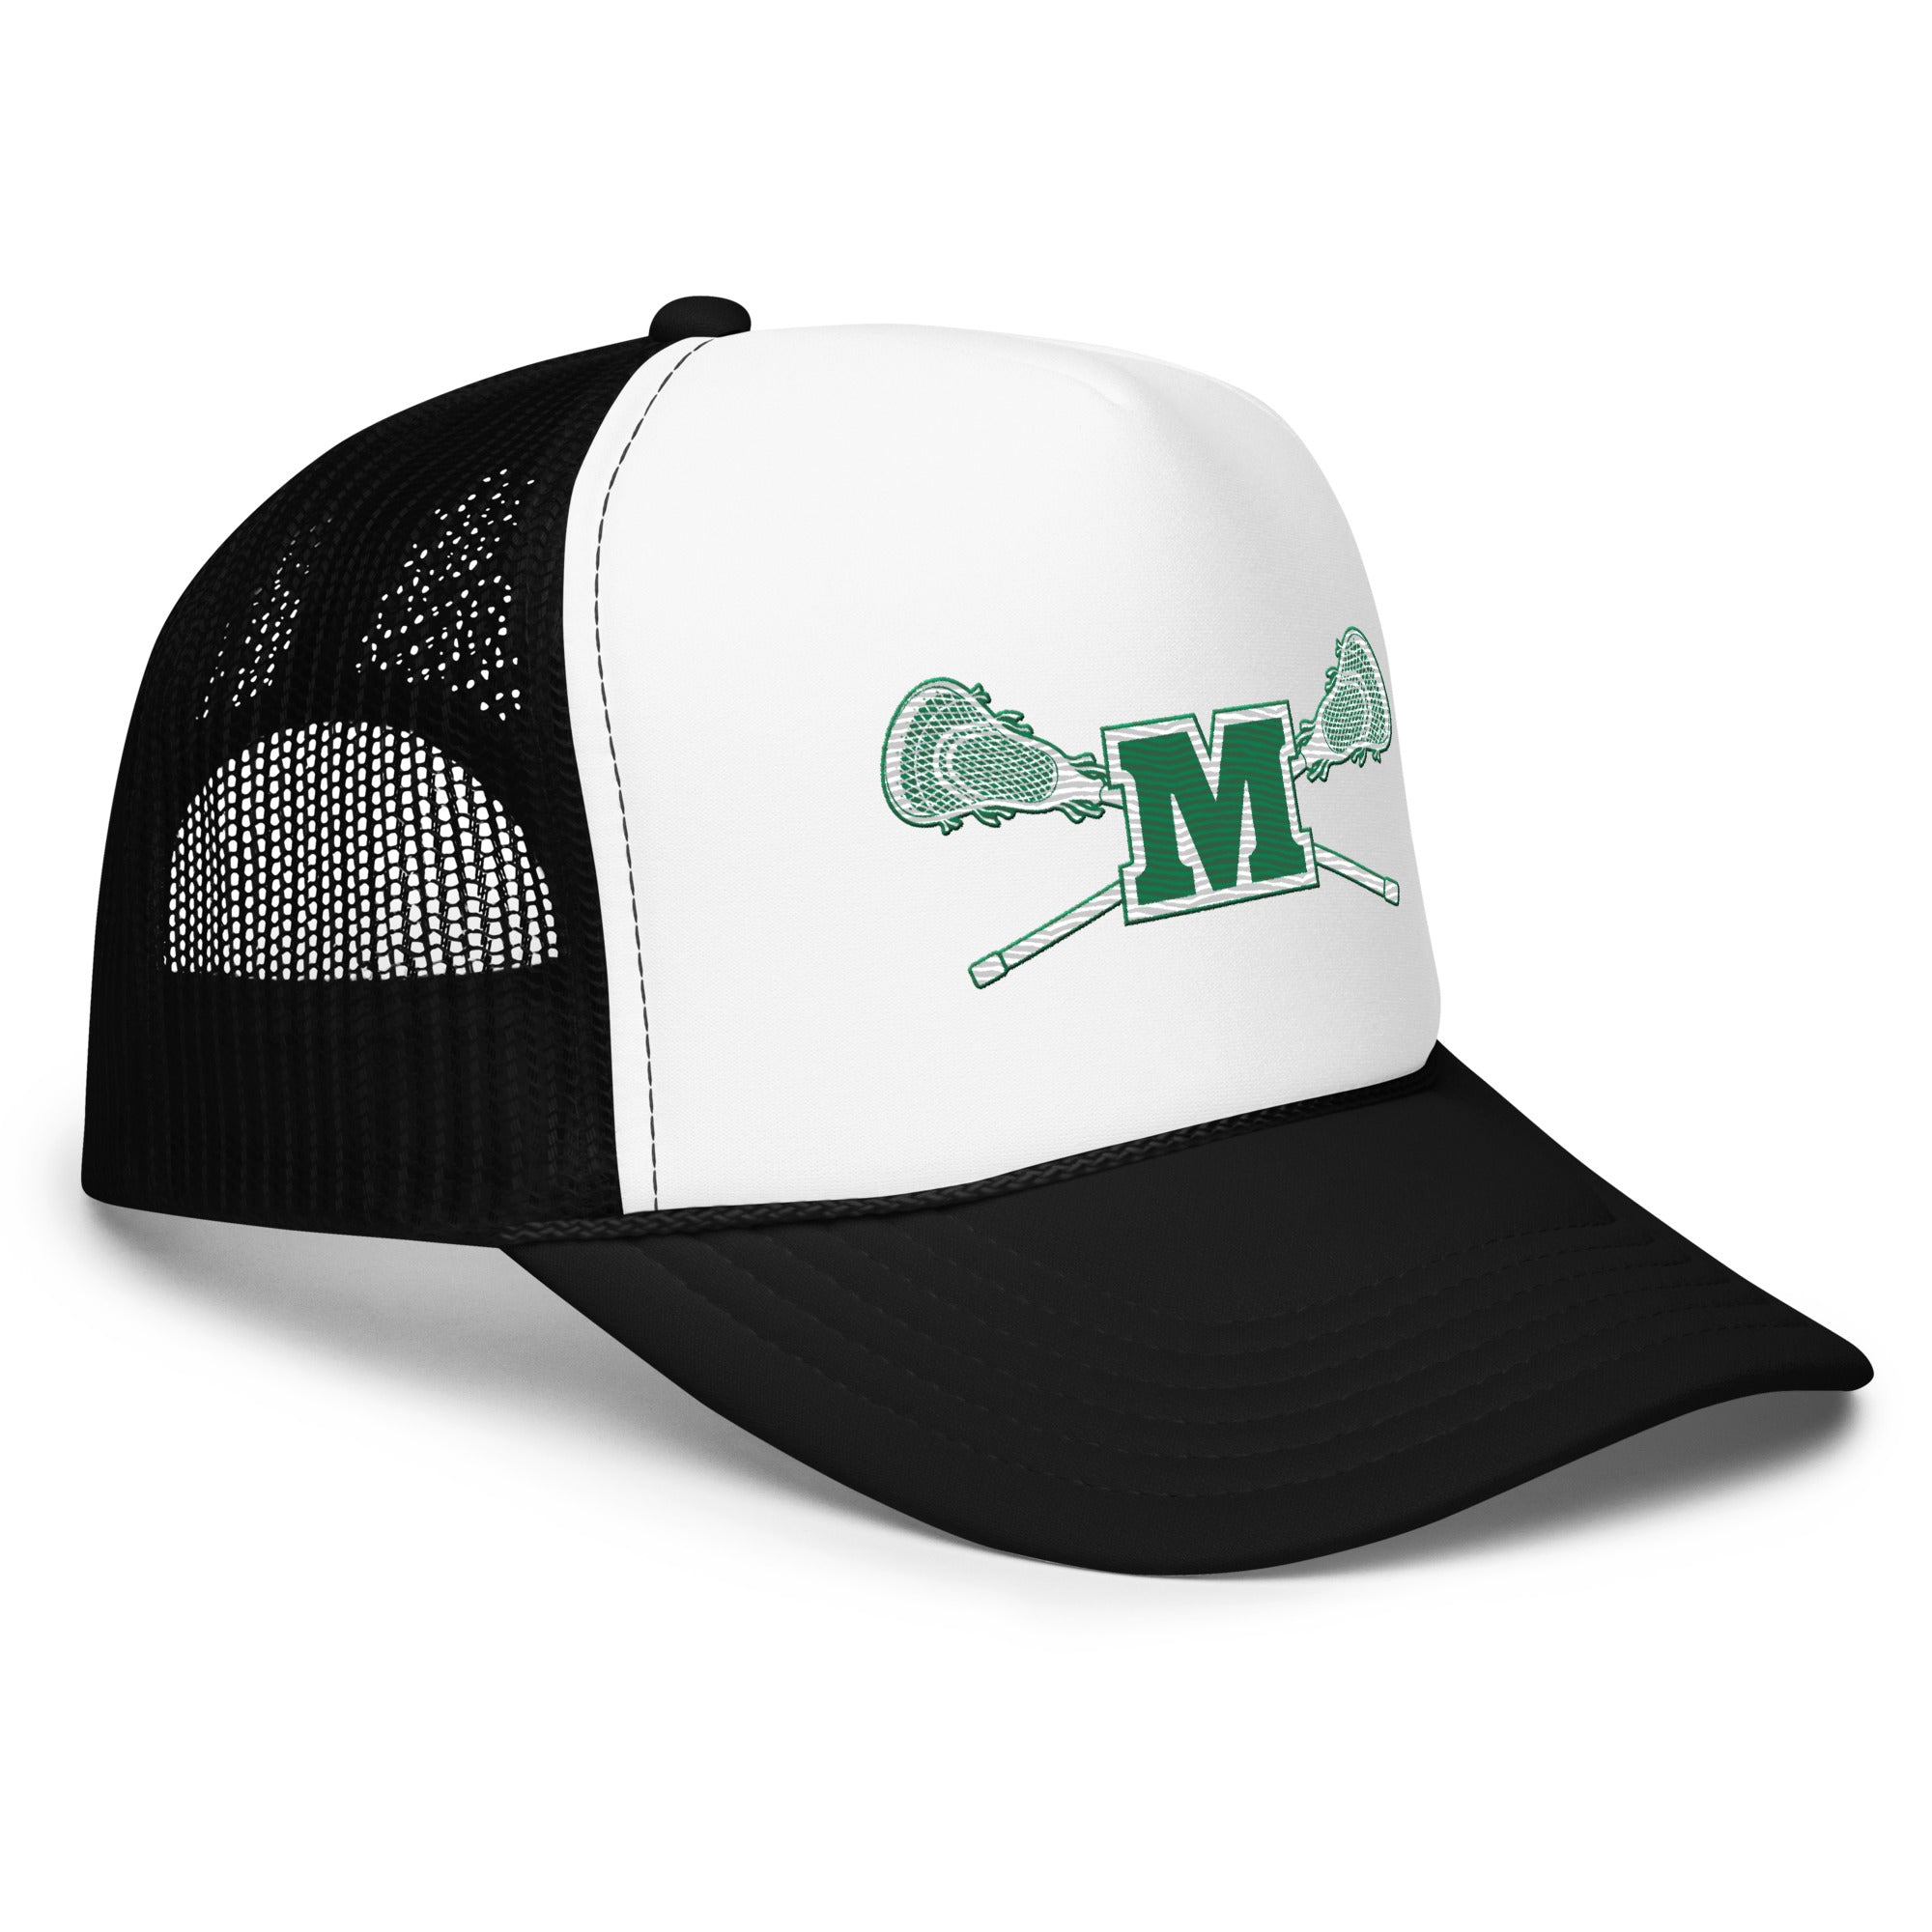 Montville Foam trucker hat